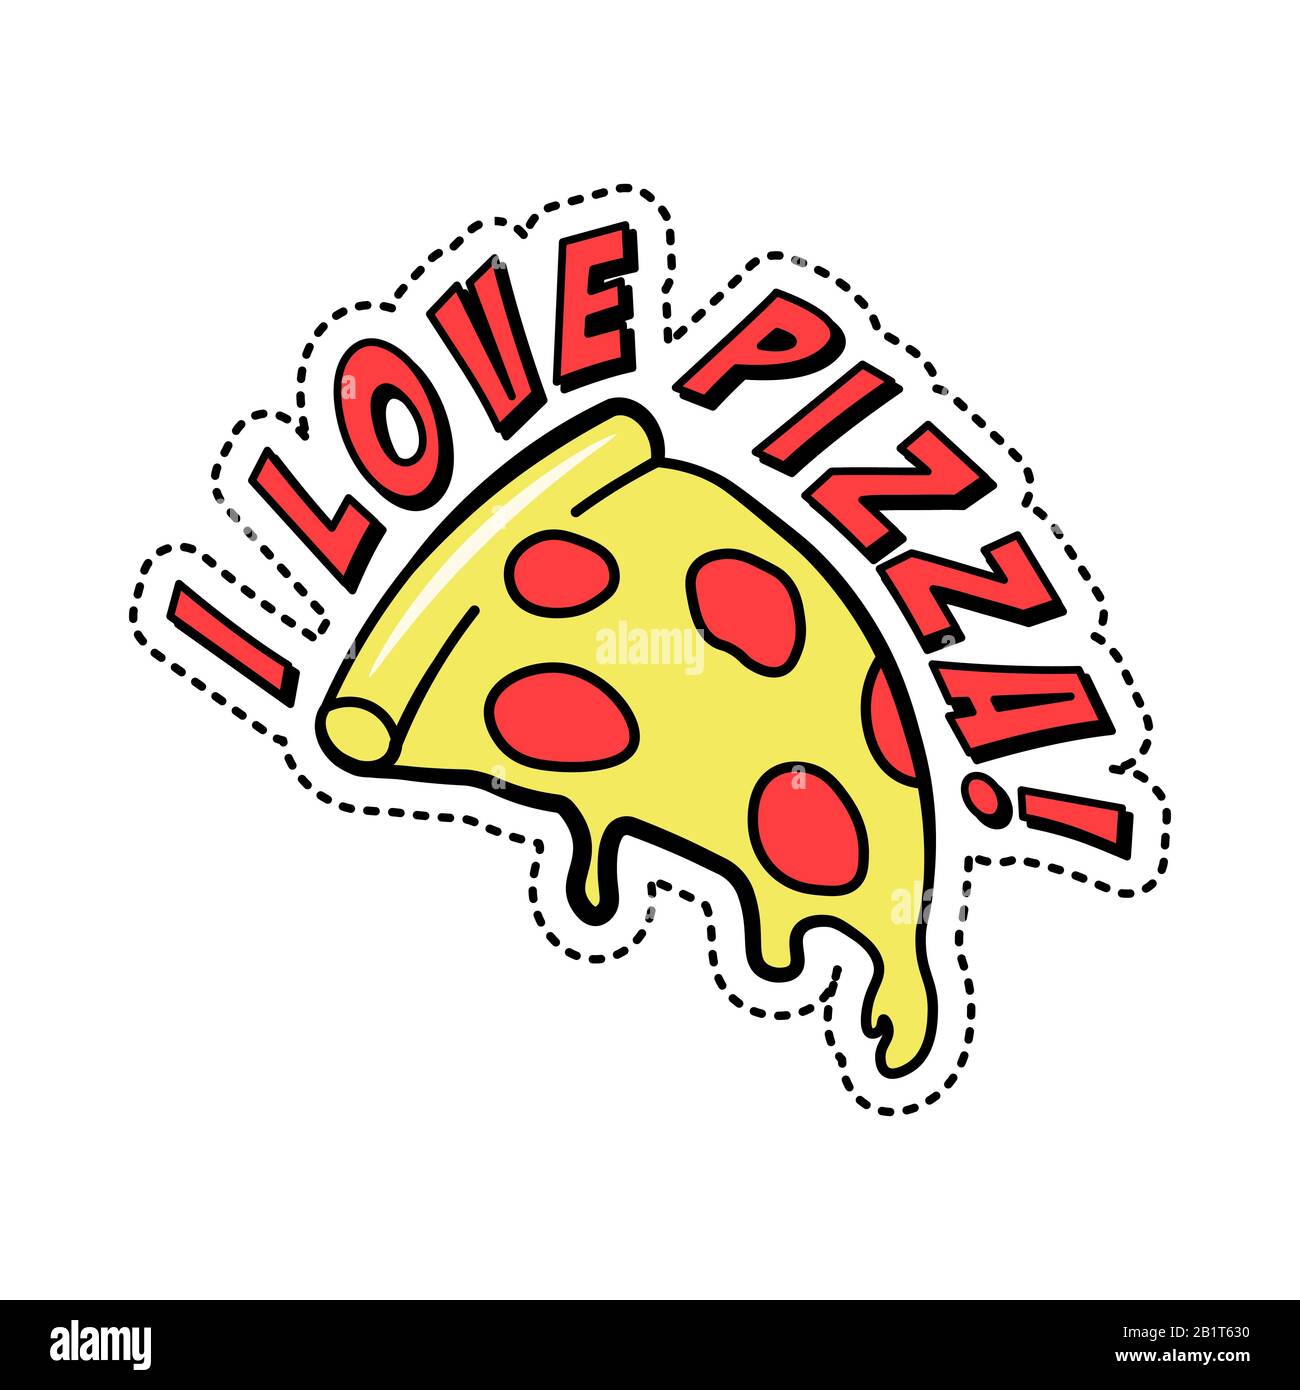 Autocollant décoratif coloré de mode avec texte J'aime la pizza, morceau de la restauration rapide italienne avec fromage et pepperoni, illustration vectorielle isolée. Illustration de Vecteur